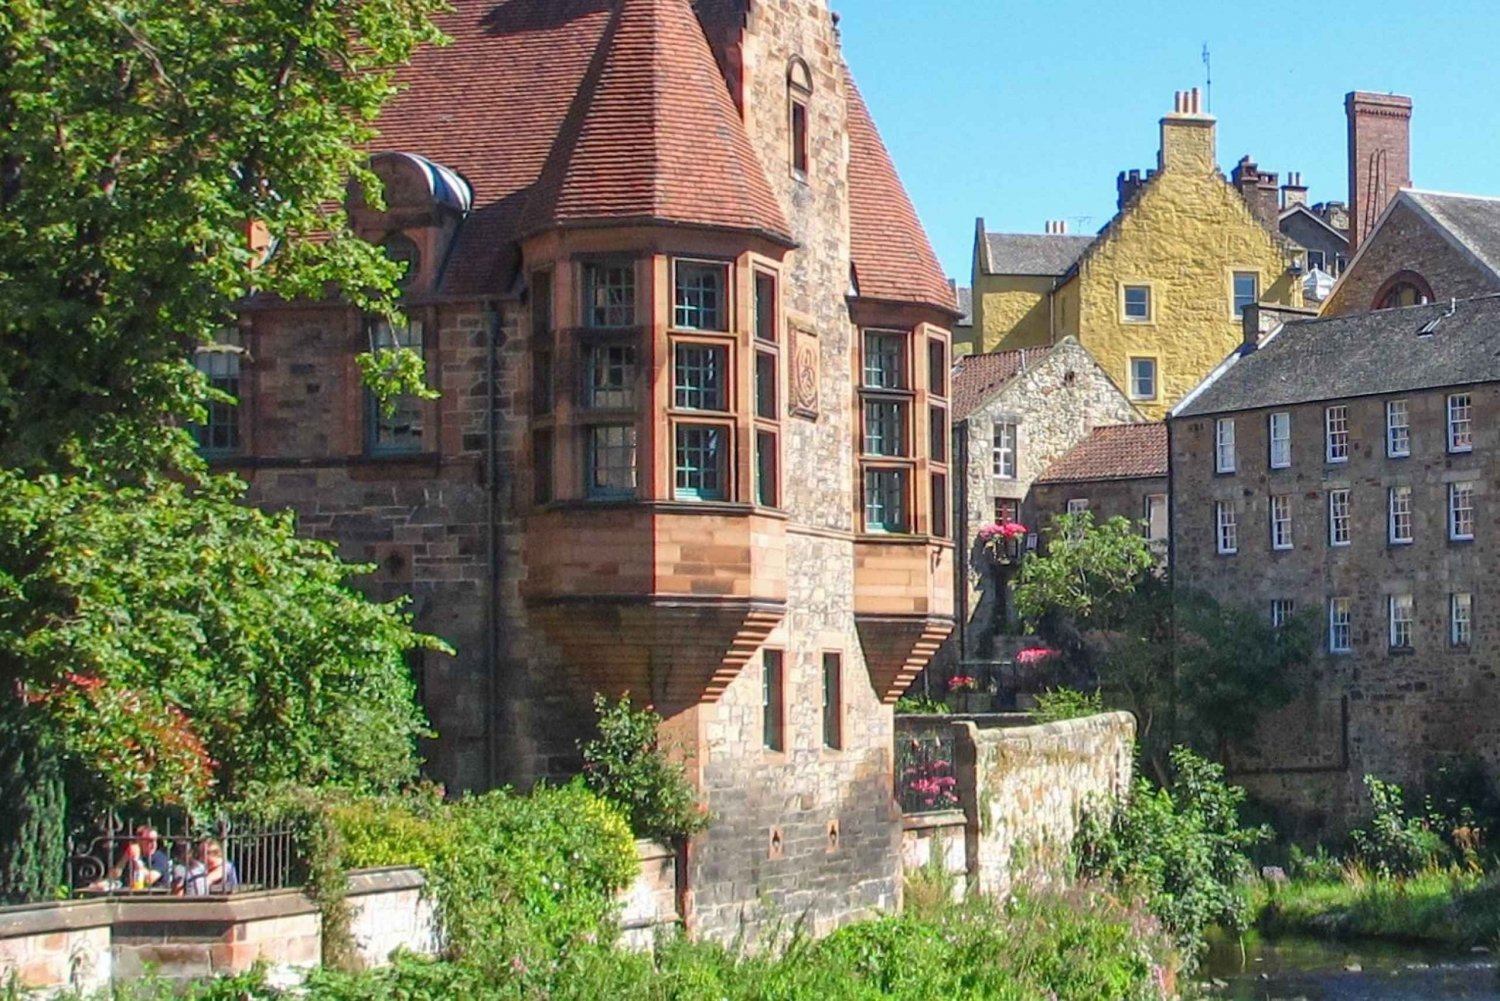 Edinburgh's Dean Village: Een audiotour met zelfbegeleiding